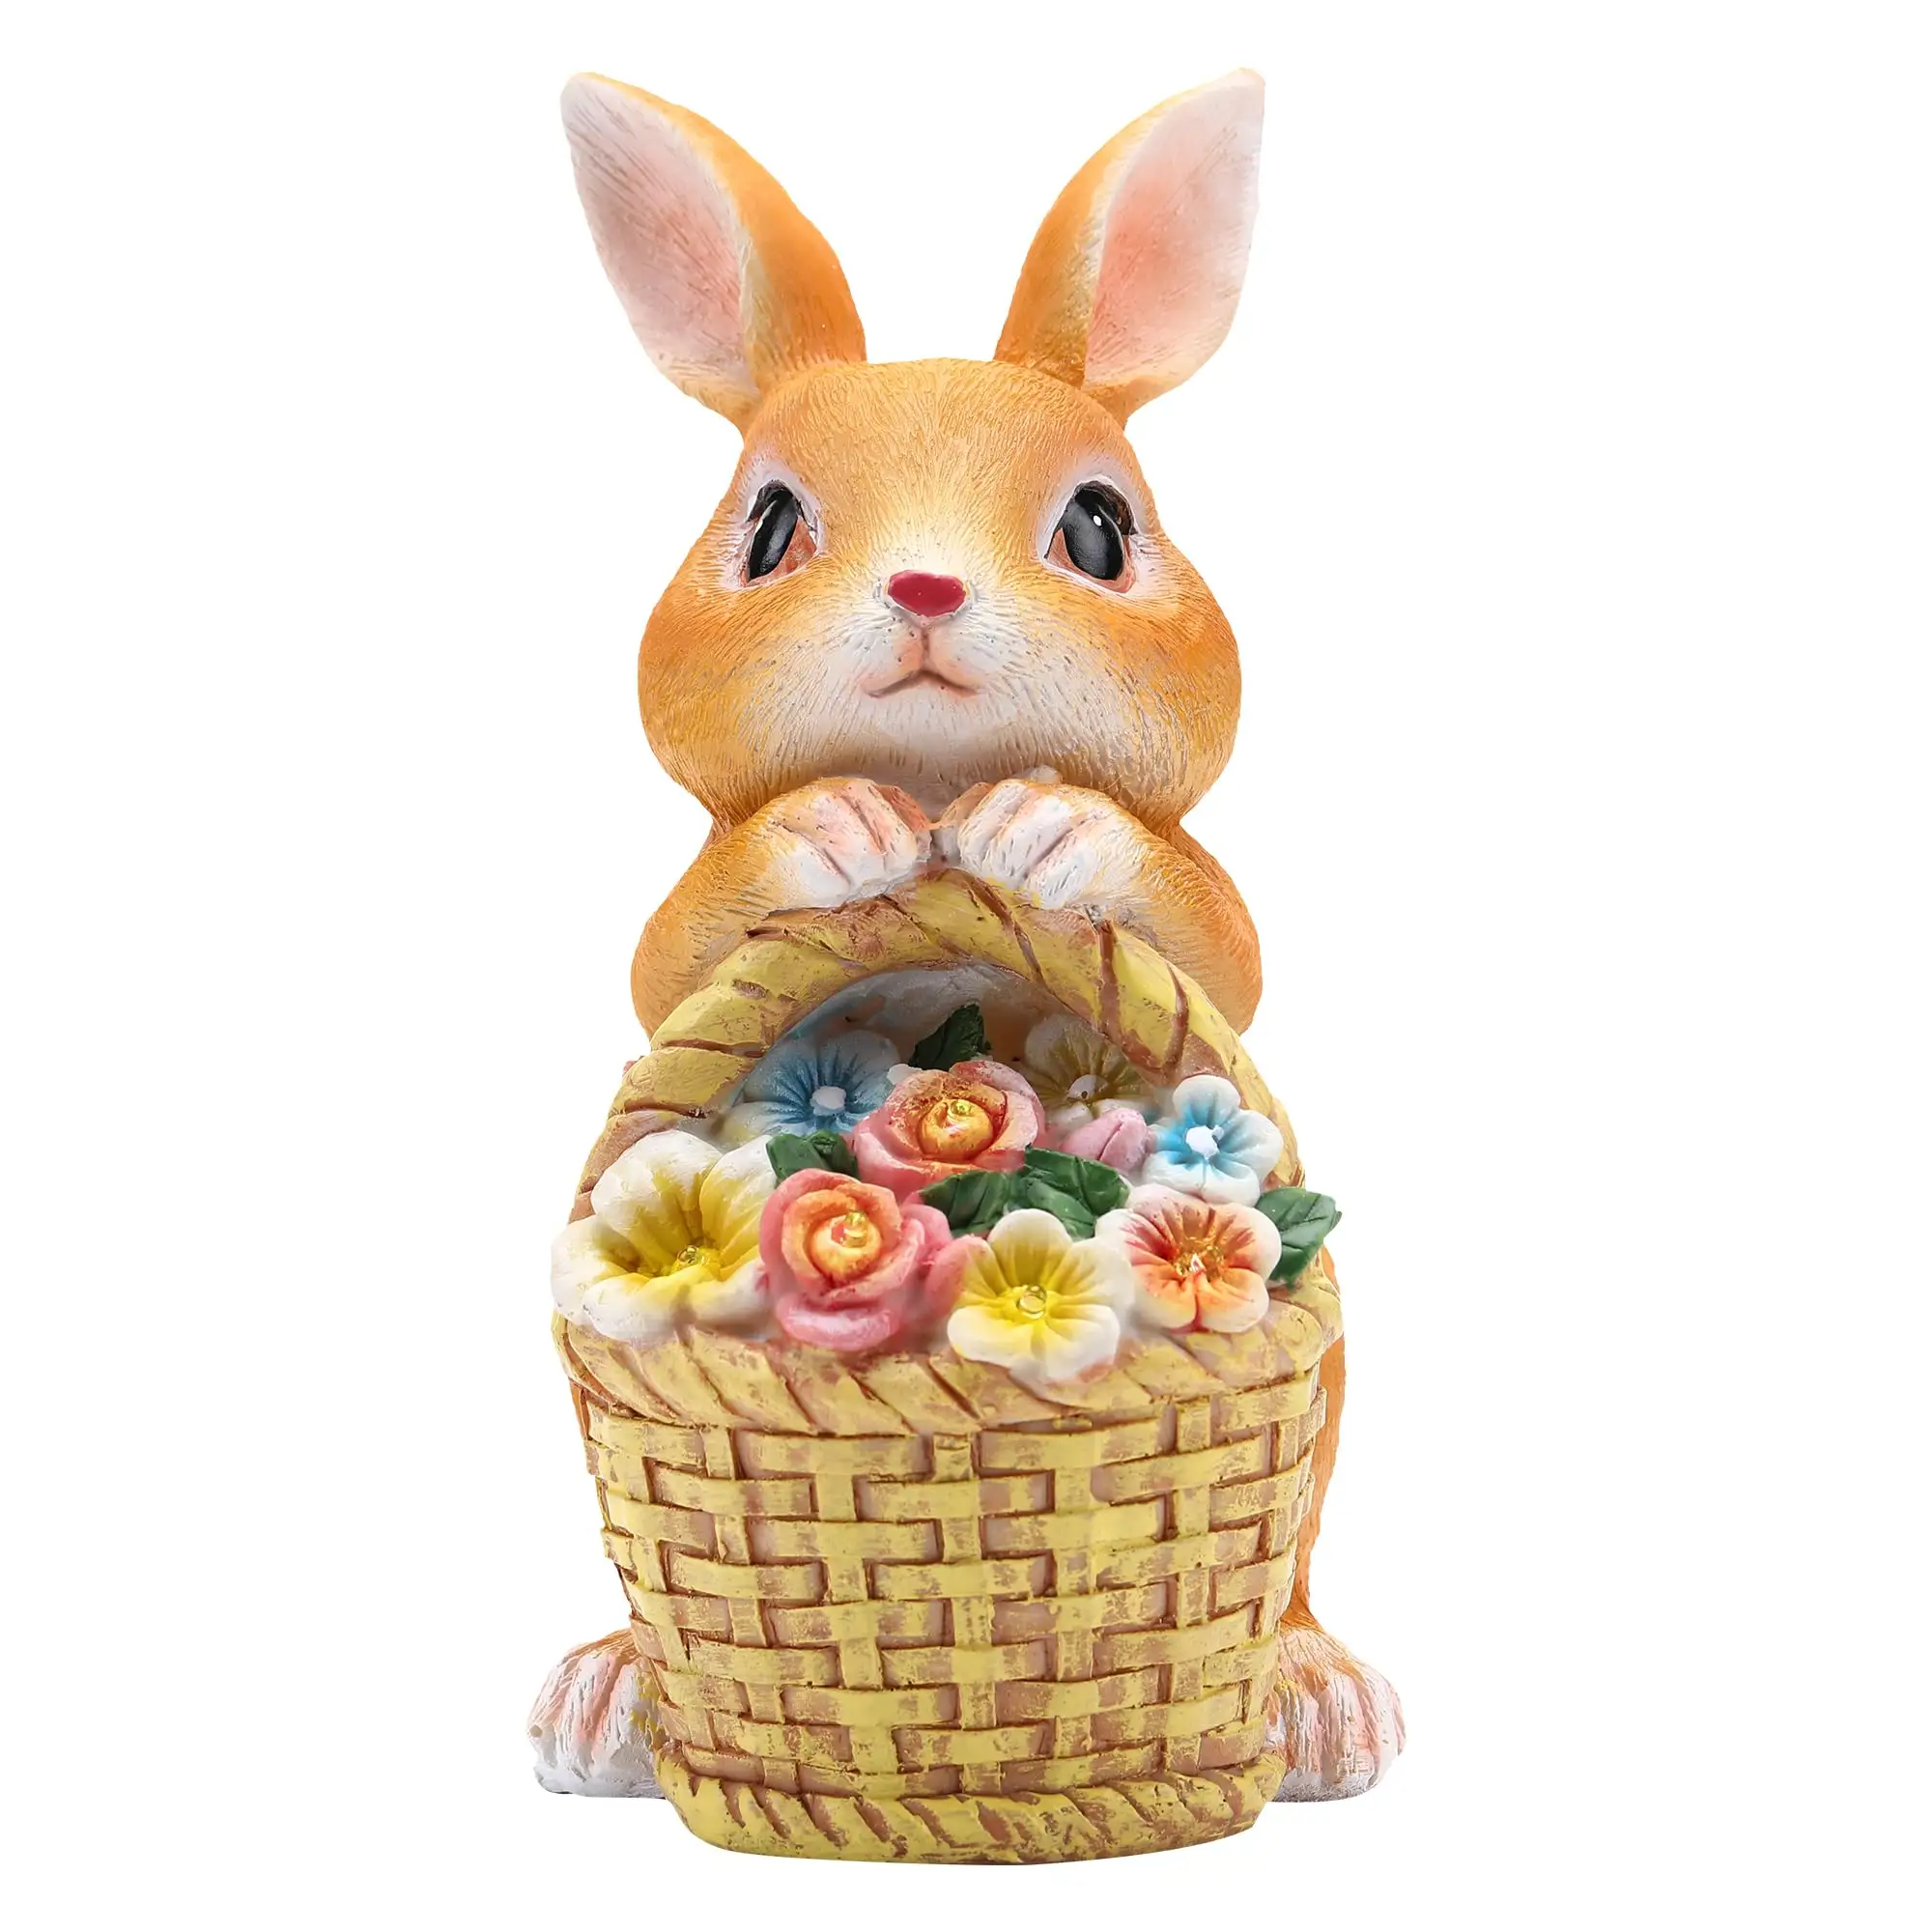 가정 가족 장식을위한 핫 세일 부활절 장식 토끼 조명 꽃 바구니을 나르는 귀여운 토끼